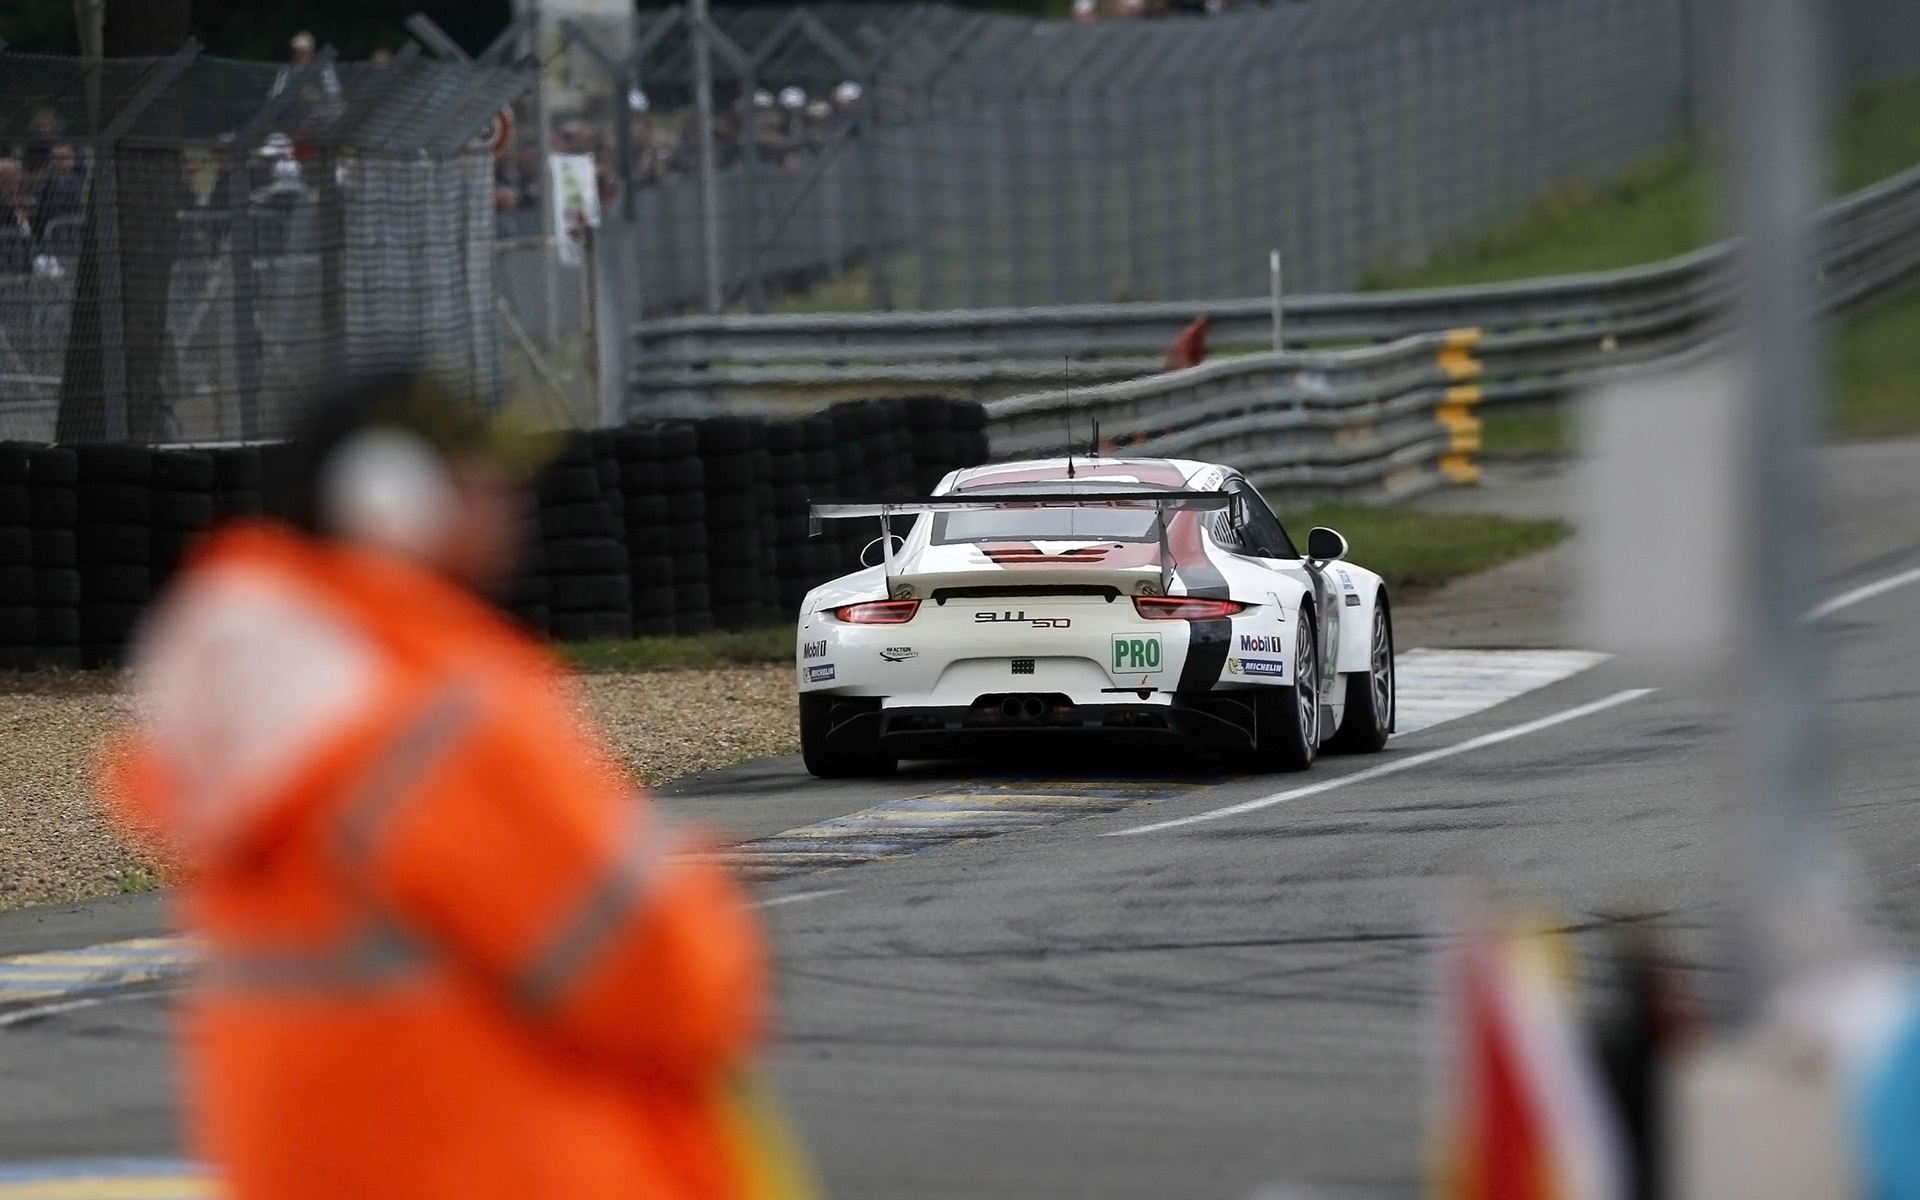 2013, Porsche, 911, Rsr, Le mans, Race, Racing, Fs Wallpaper